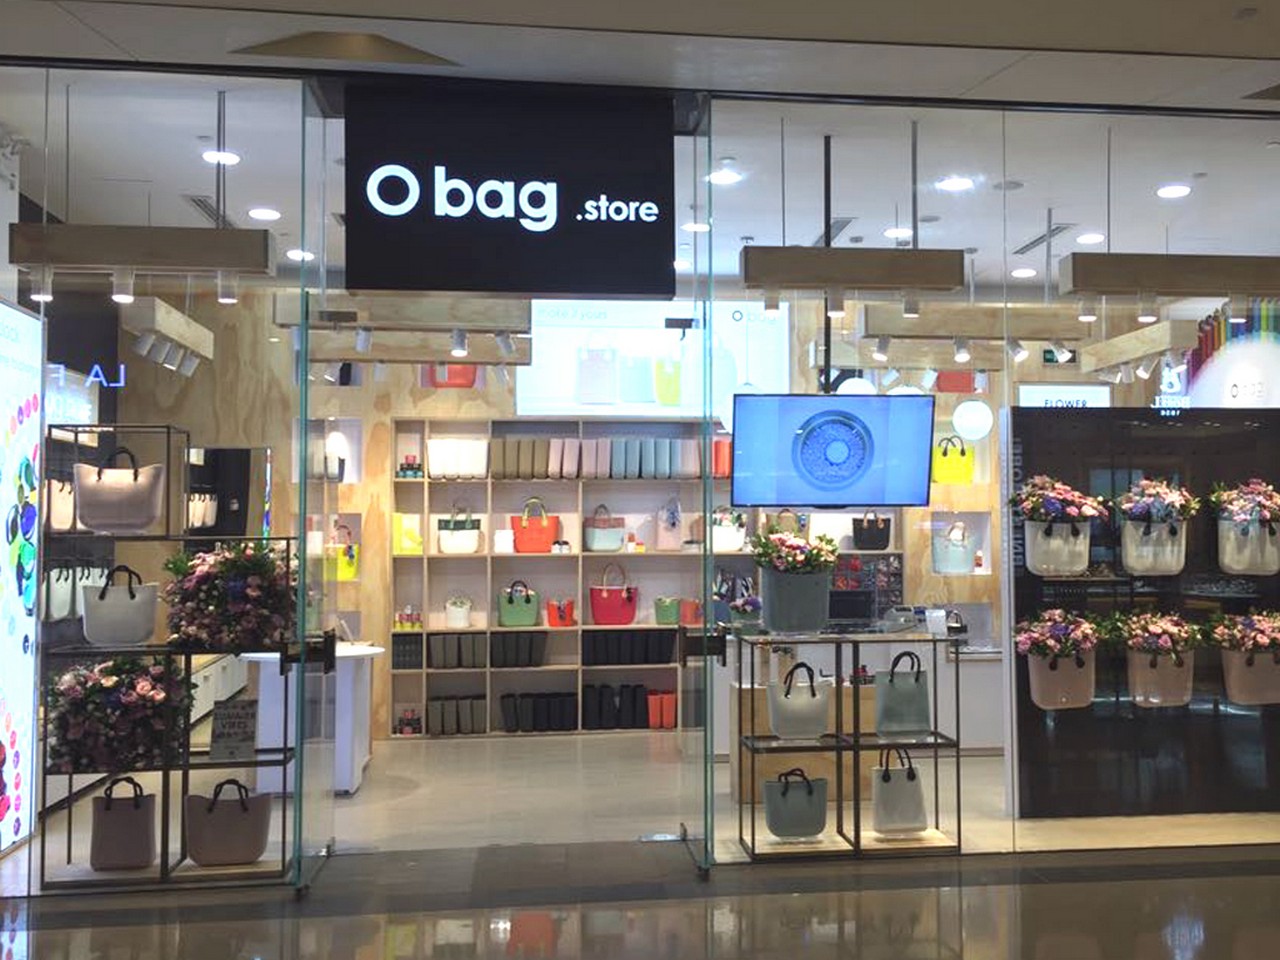 O bag negozi: apre il primo monomarca in Cina a Chengdu, le foto